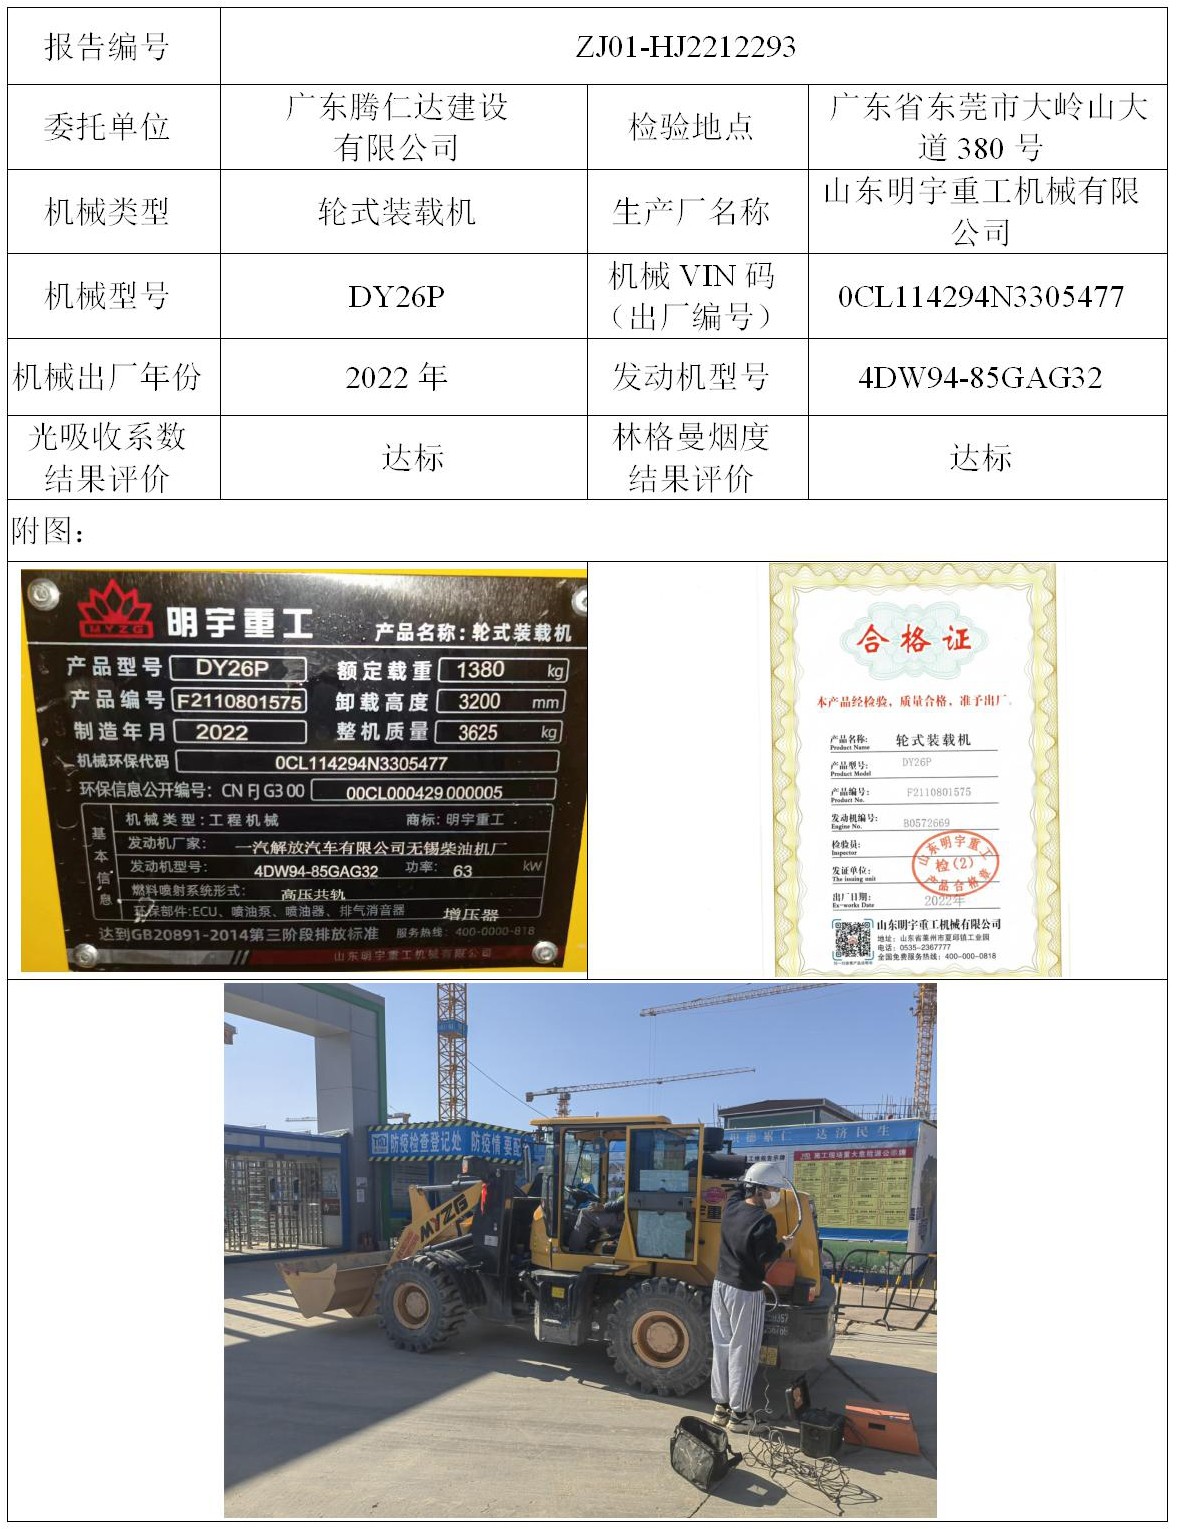 委托-ZJ01-HJ2212293广东腾仁达建设有限公司（叉车废气）二维码-江静汶_01.jpg